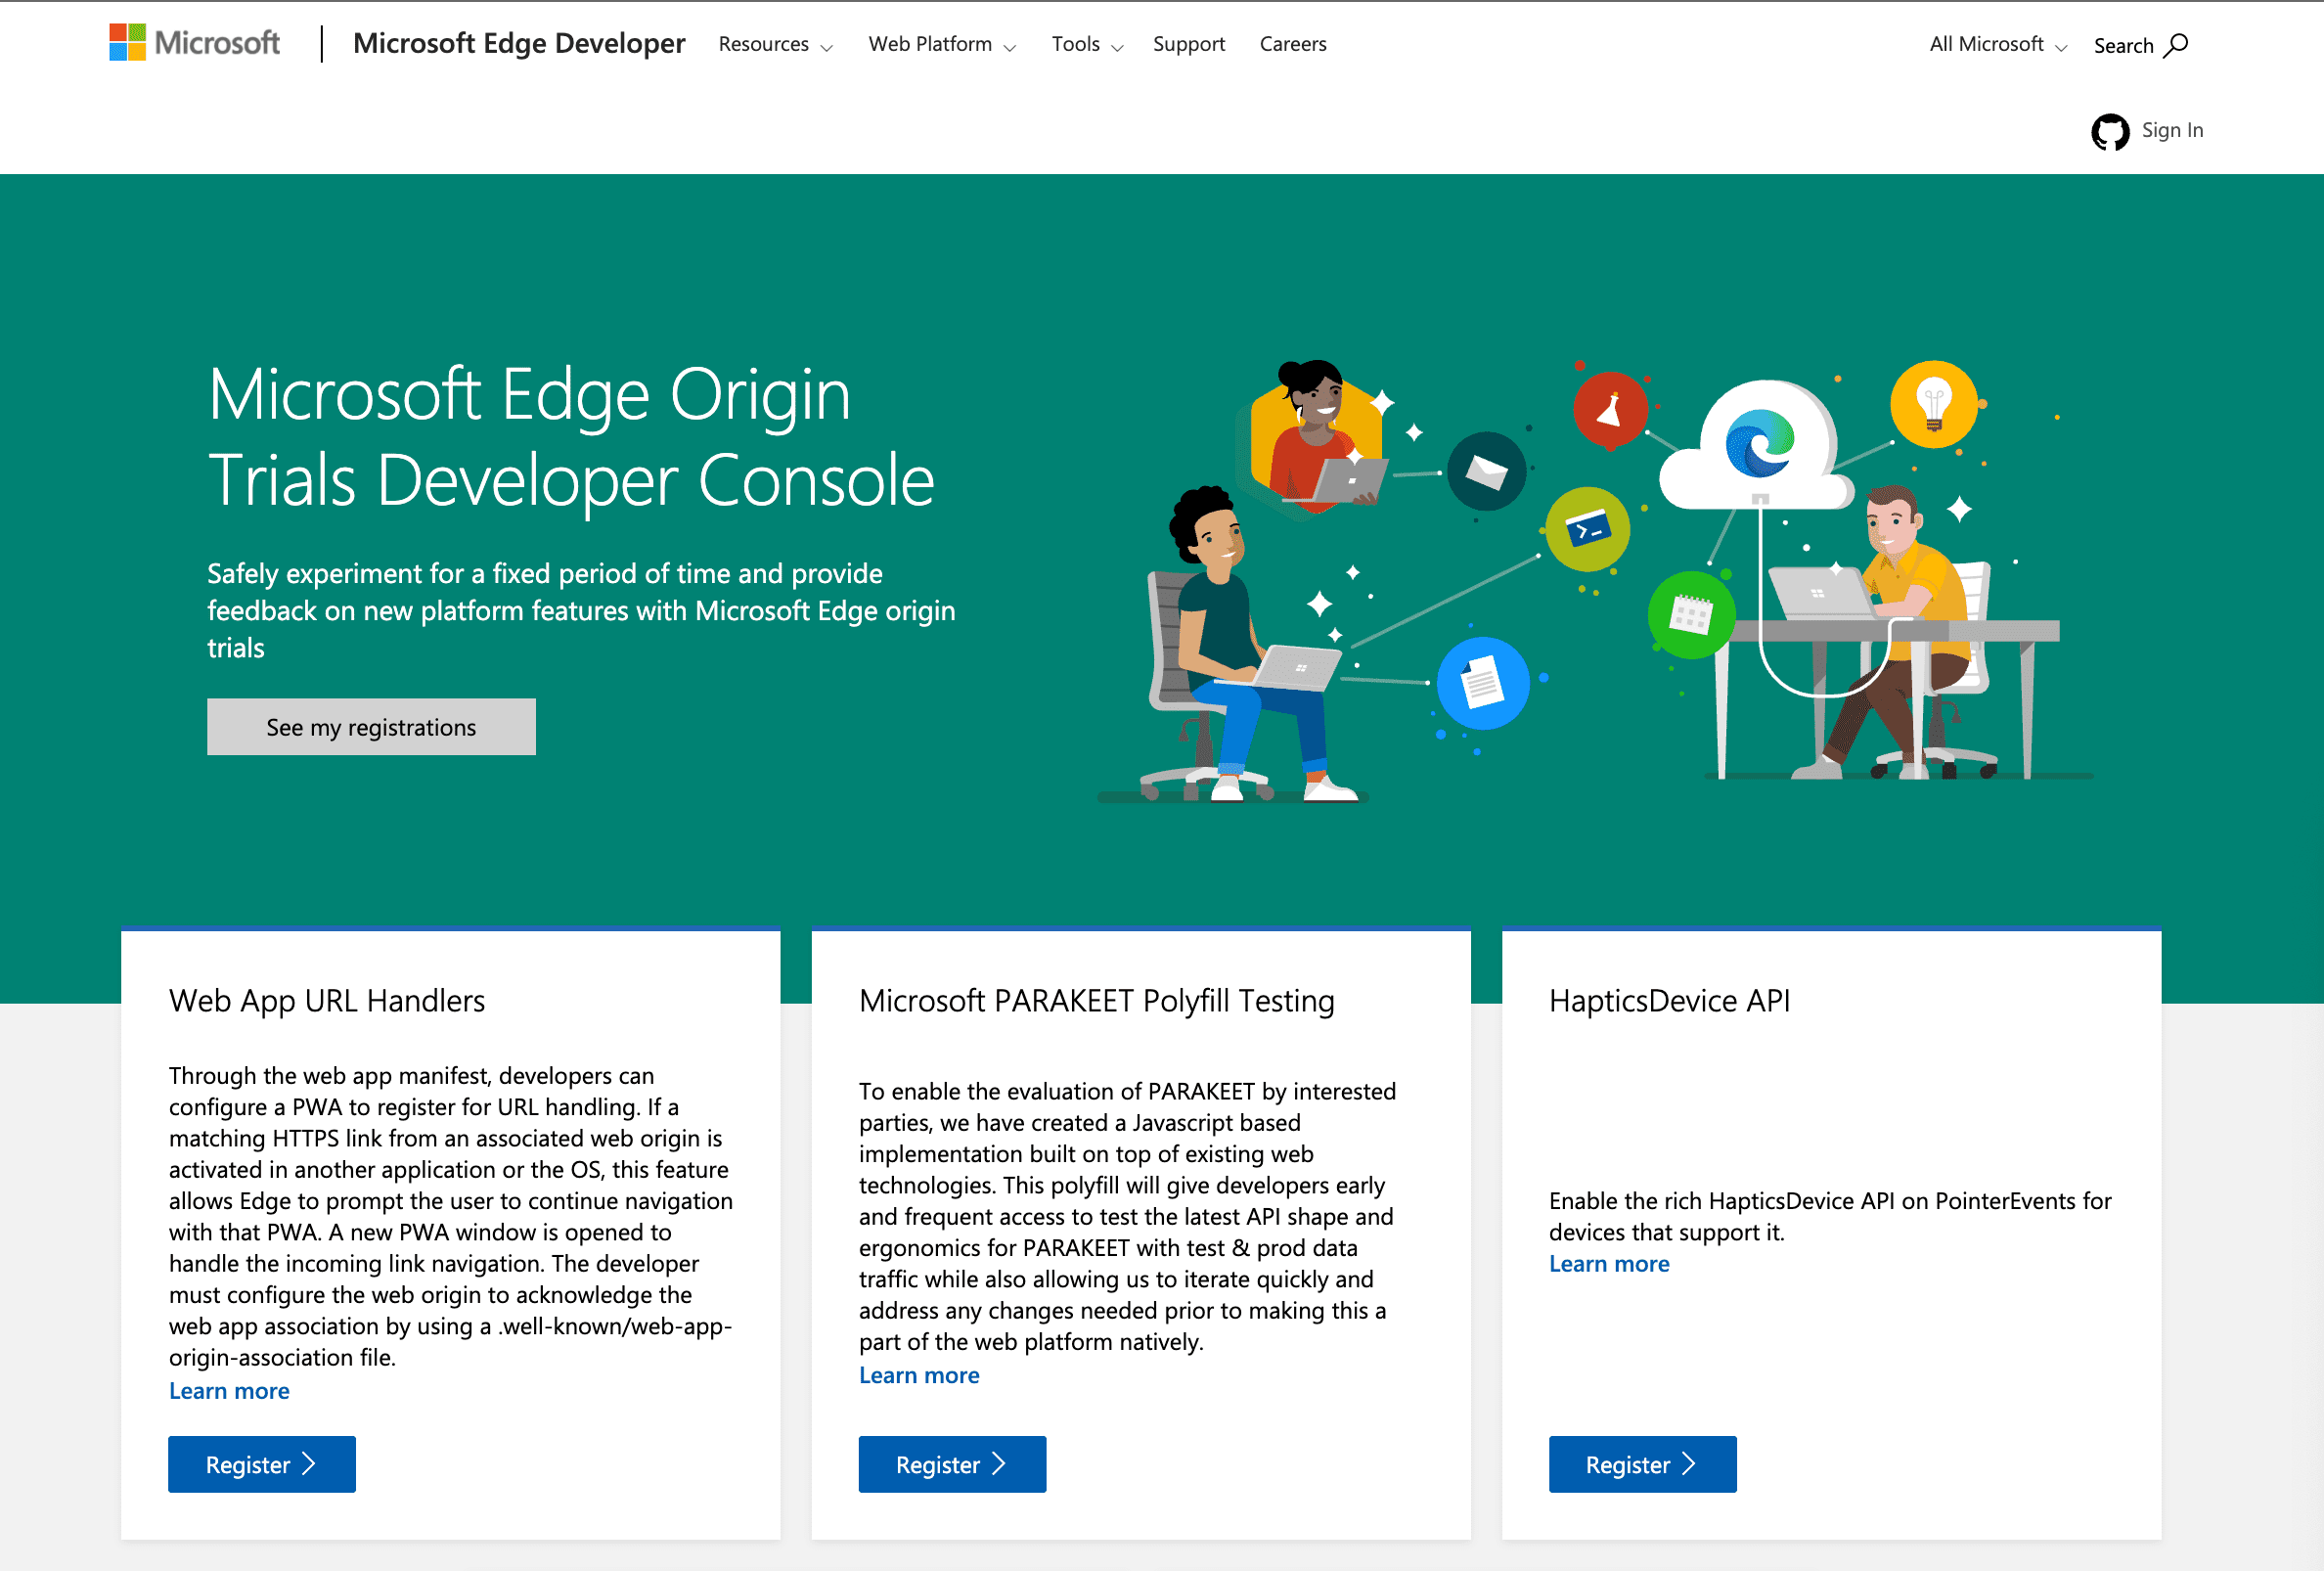 قائمة بمراحل التجربة والتقييم المتاحة لمتصفِّح Microsoft Edge.